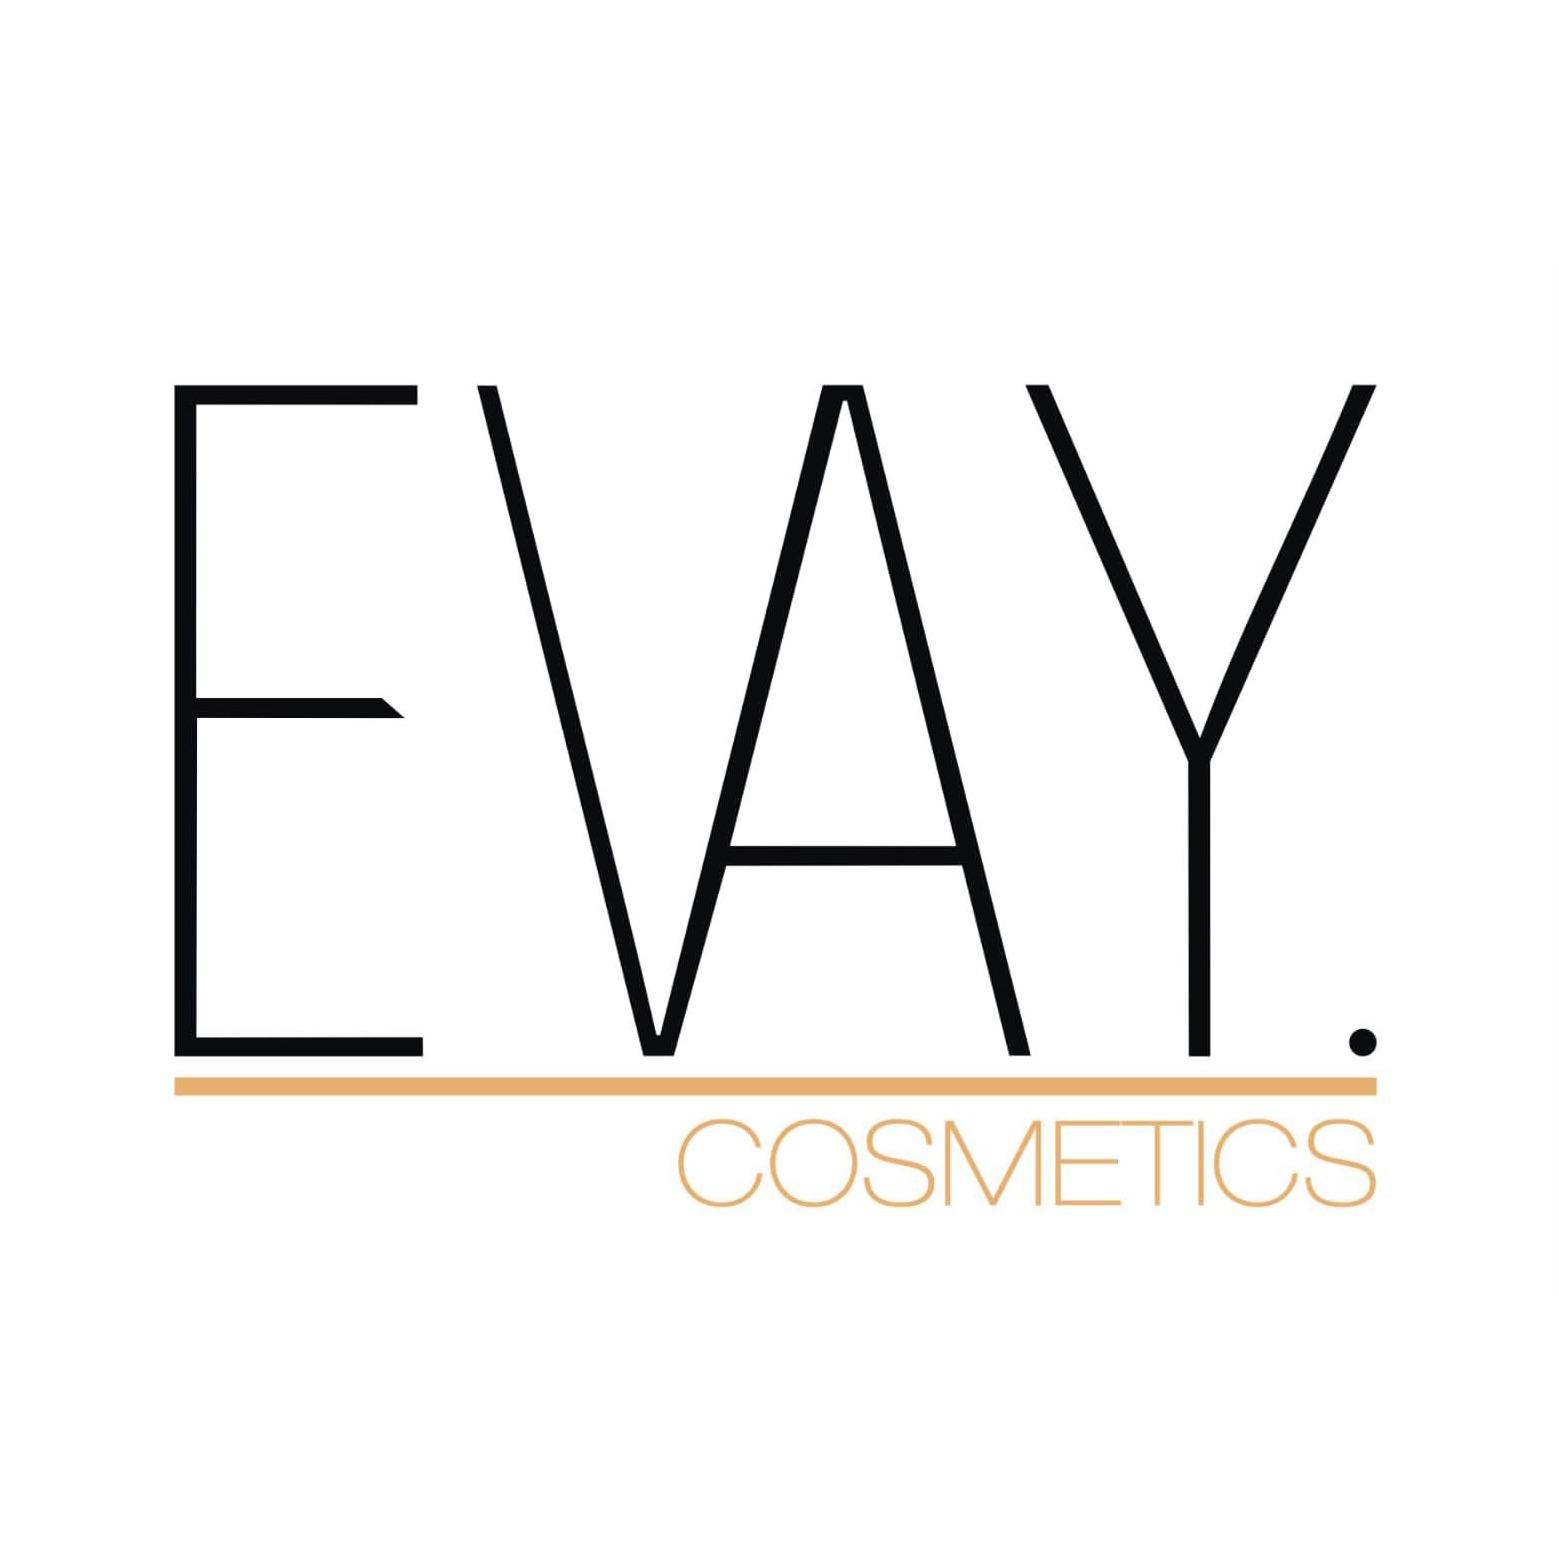 Evay cosmetics Inh. Oya Aksoy in Hagen in Westfalen - Logo